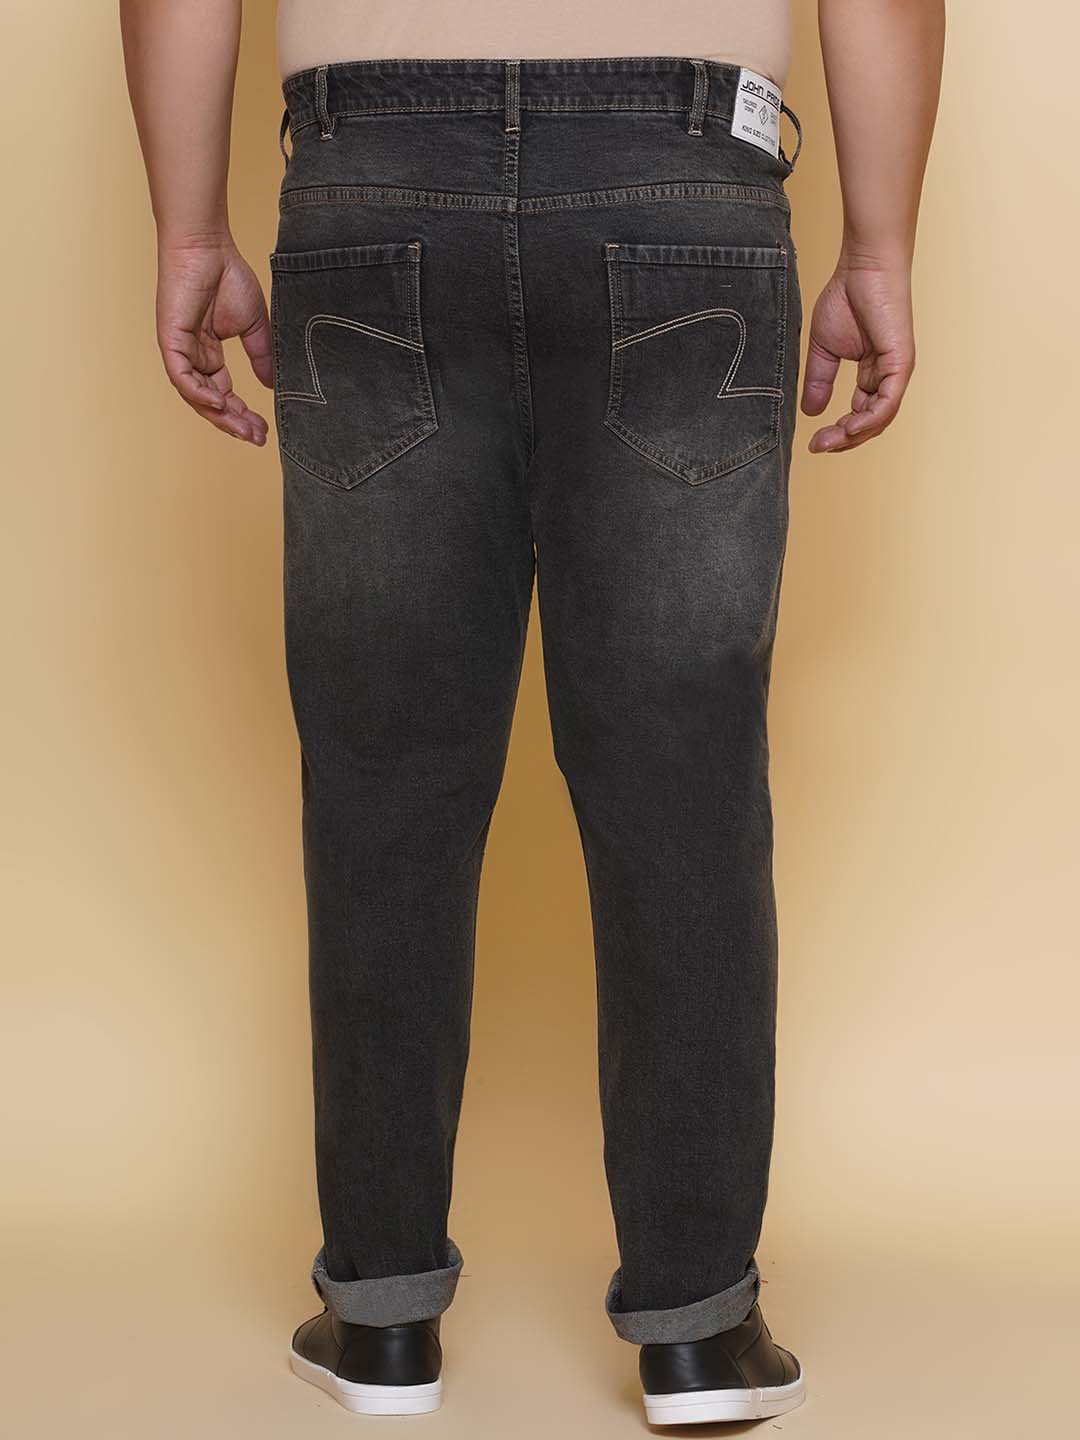 bottomwear/jeans/EJPJ25135/ejpj25135-5.jpg